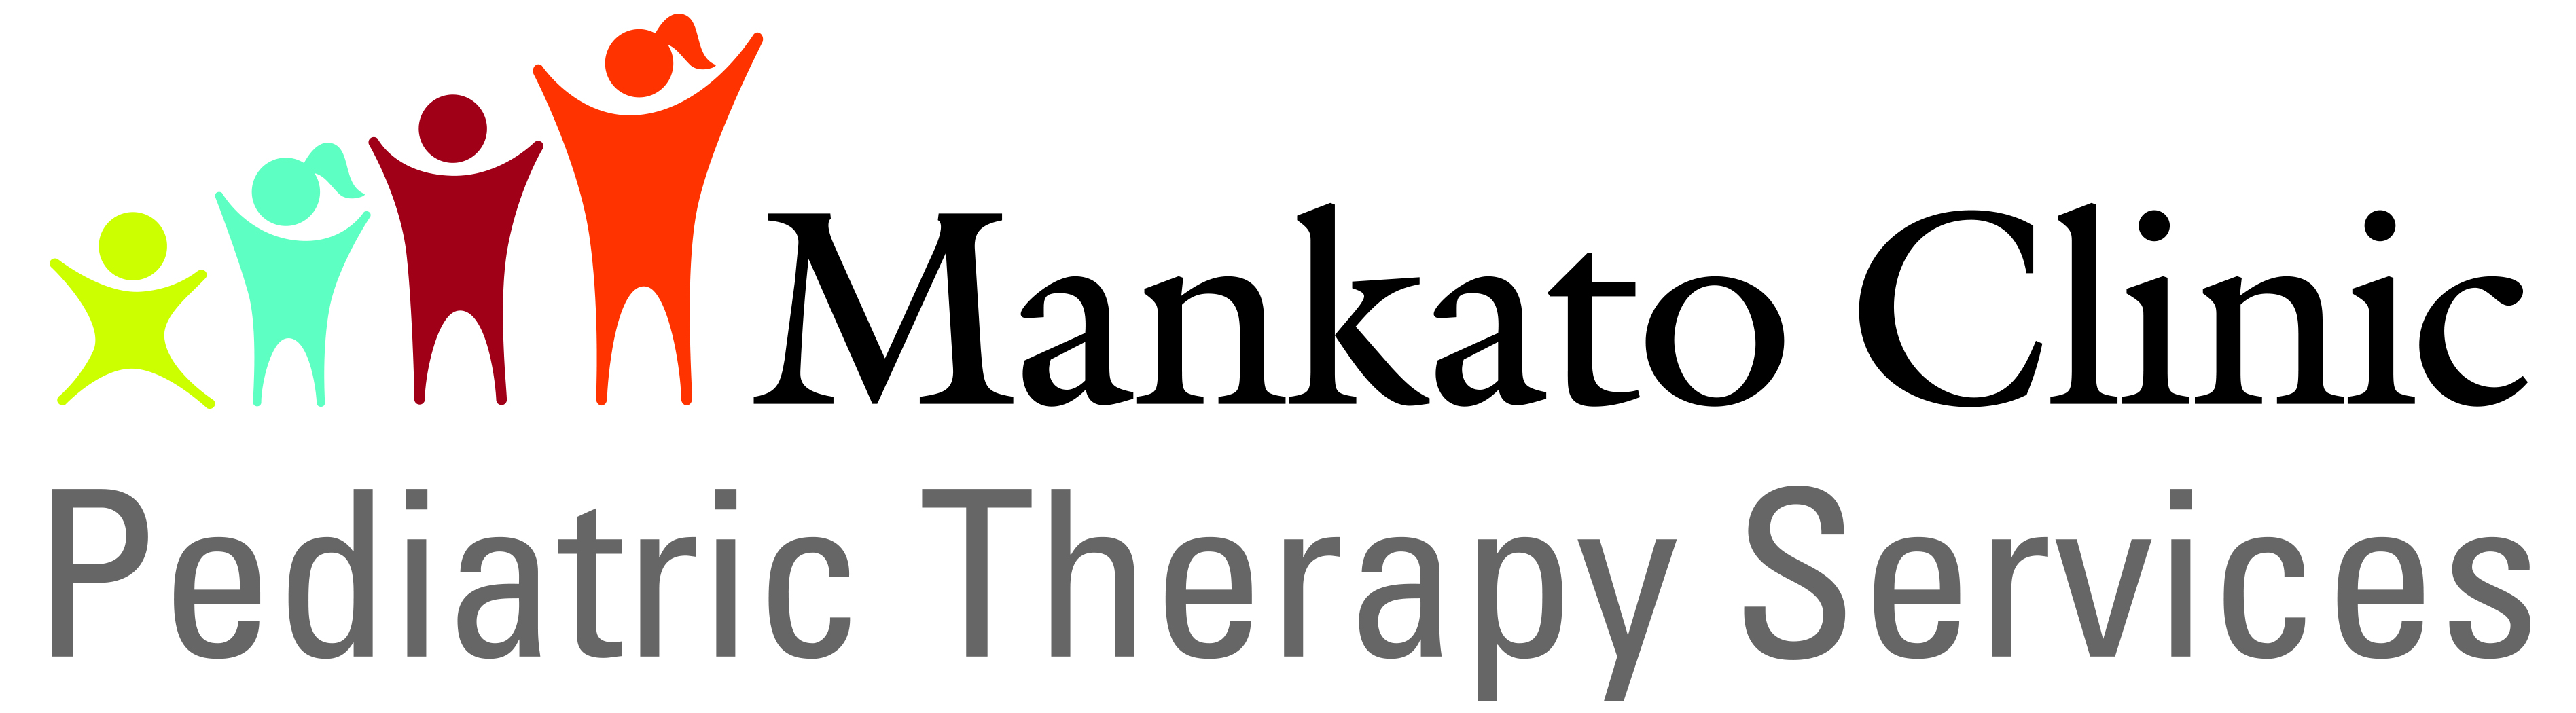 Mankato Clinic Pediatric Therapy Services